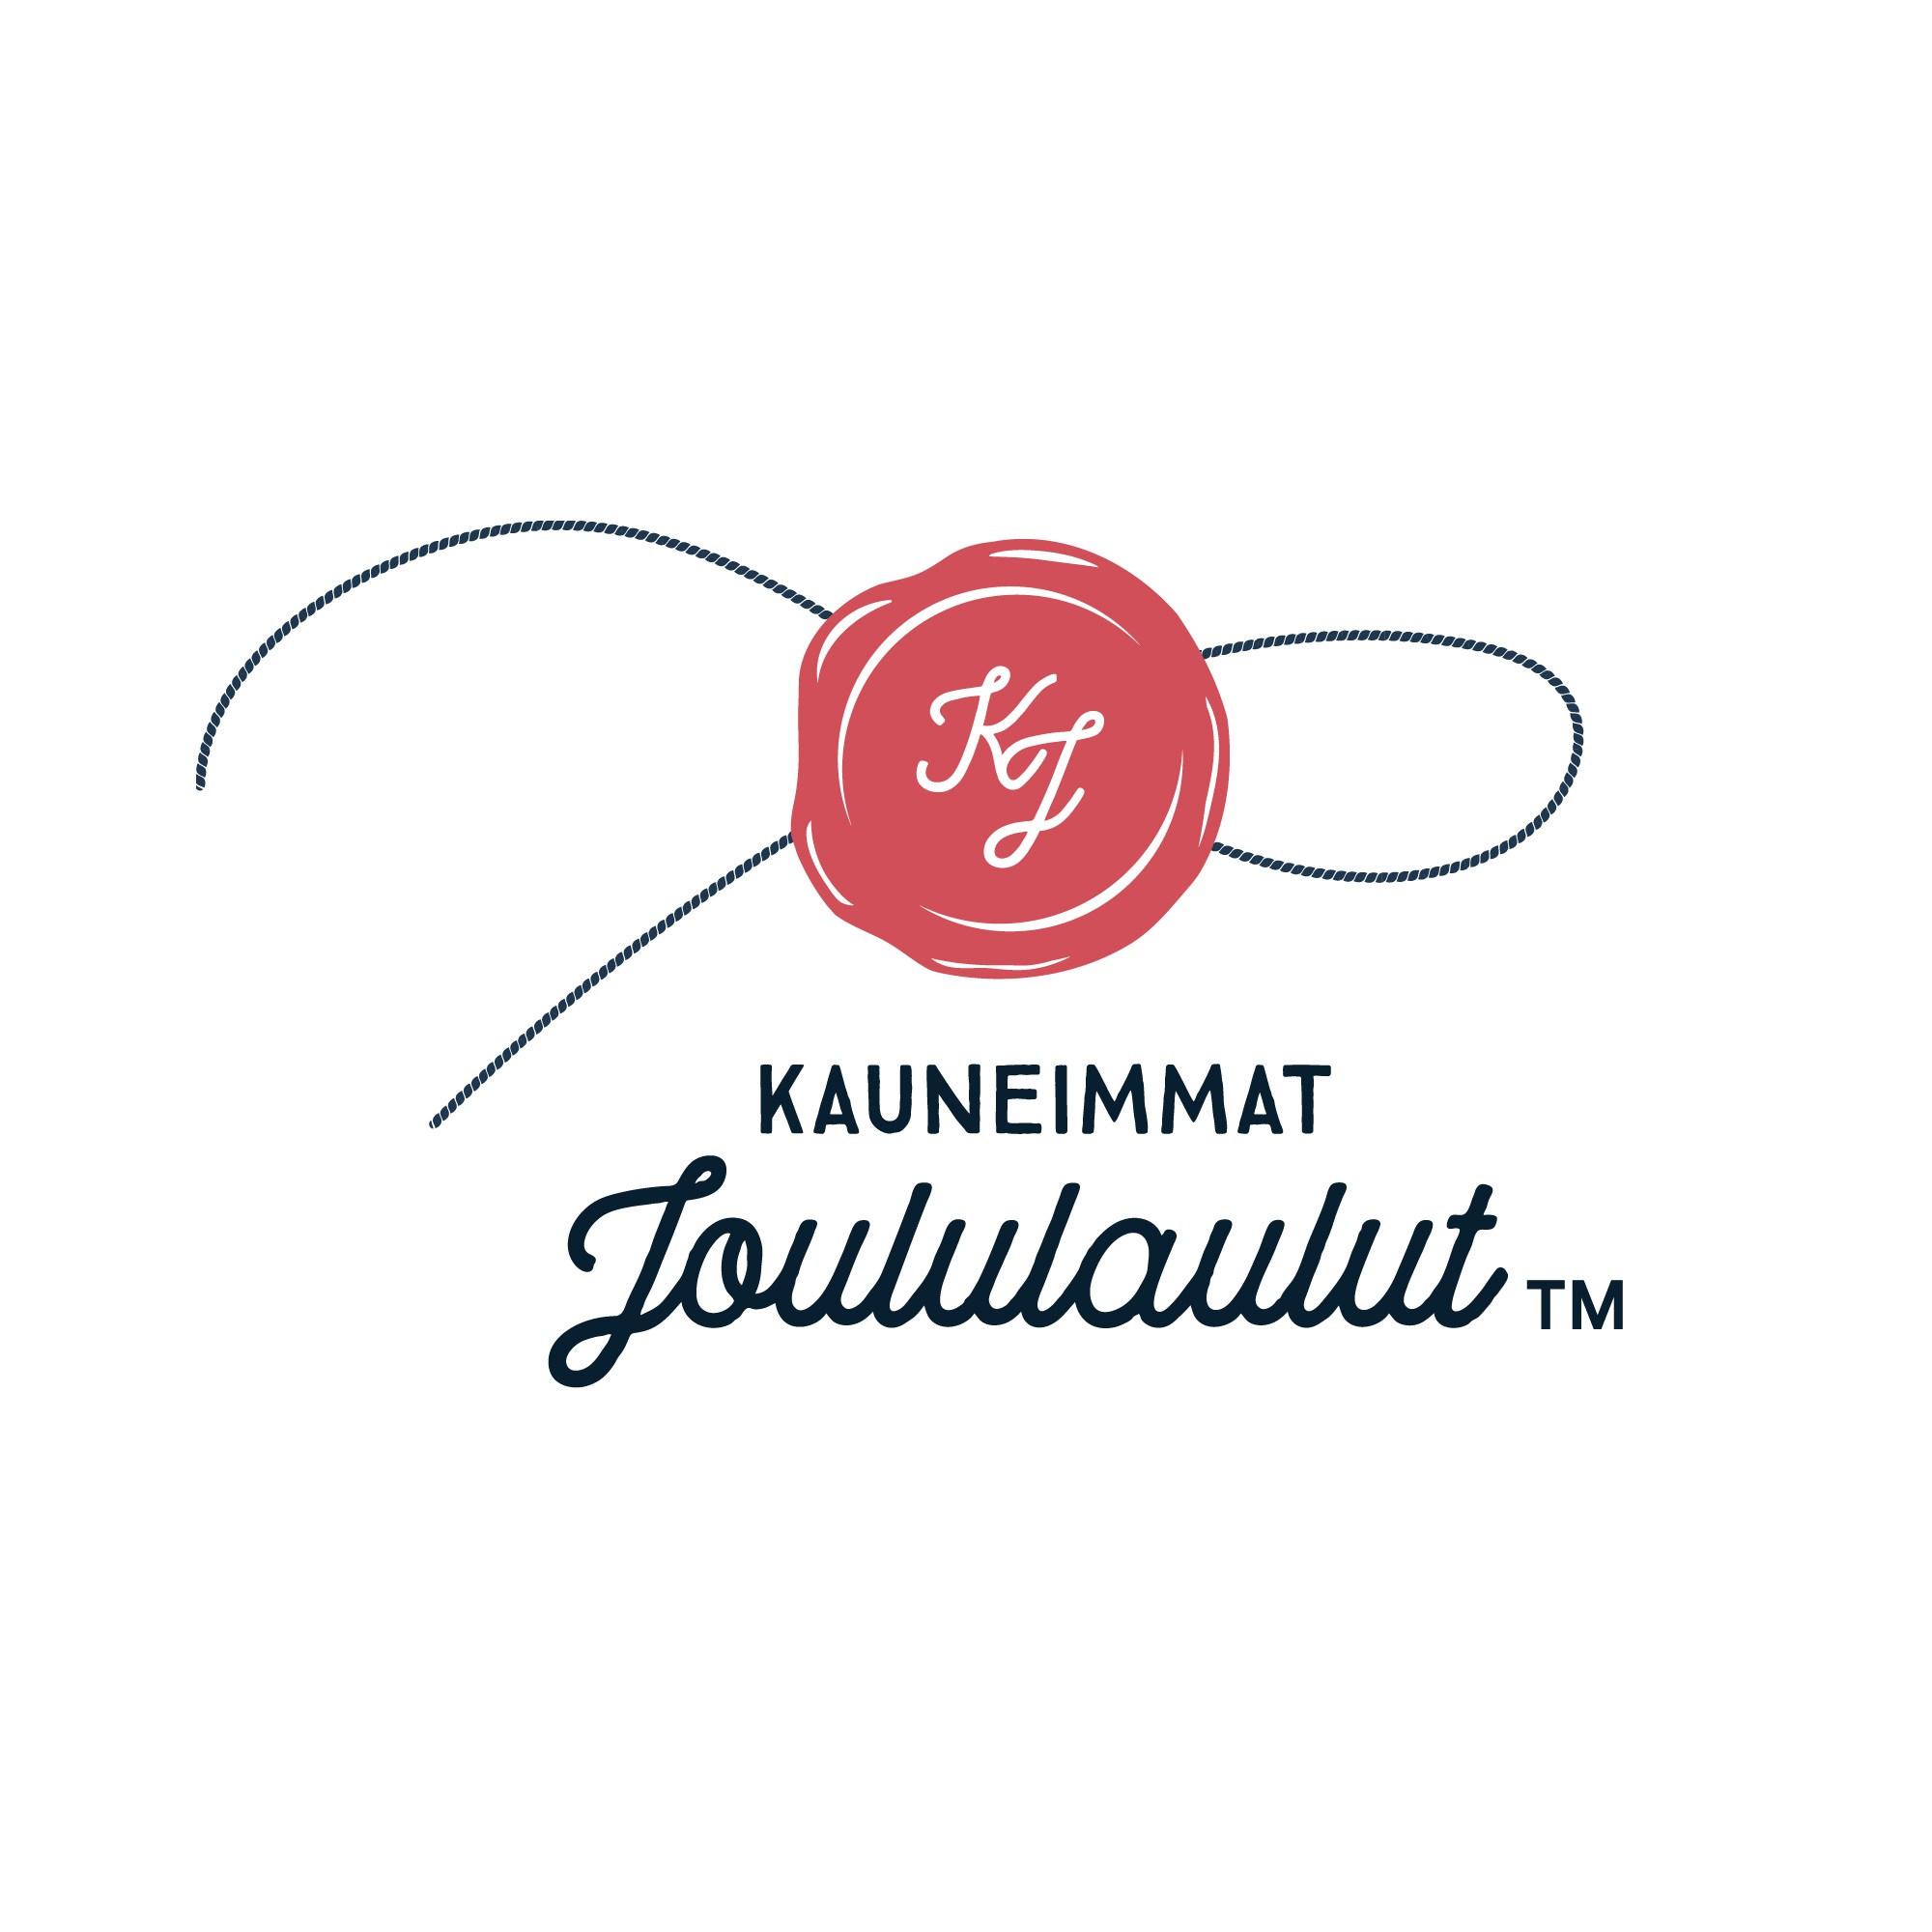 Kauneimpien joululaulujen logo, keskellä punainen sinetti, jossa tyylitellyt kirjaimet K ja J